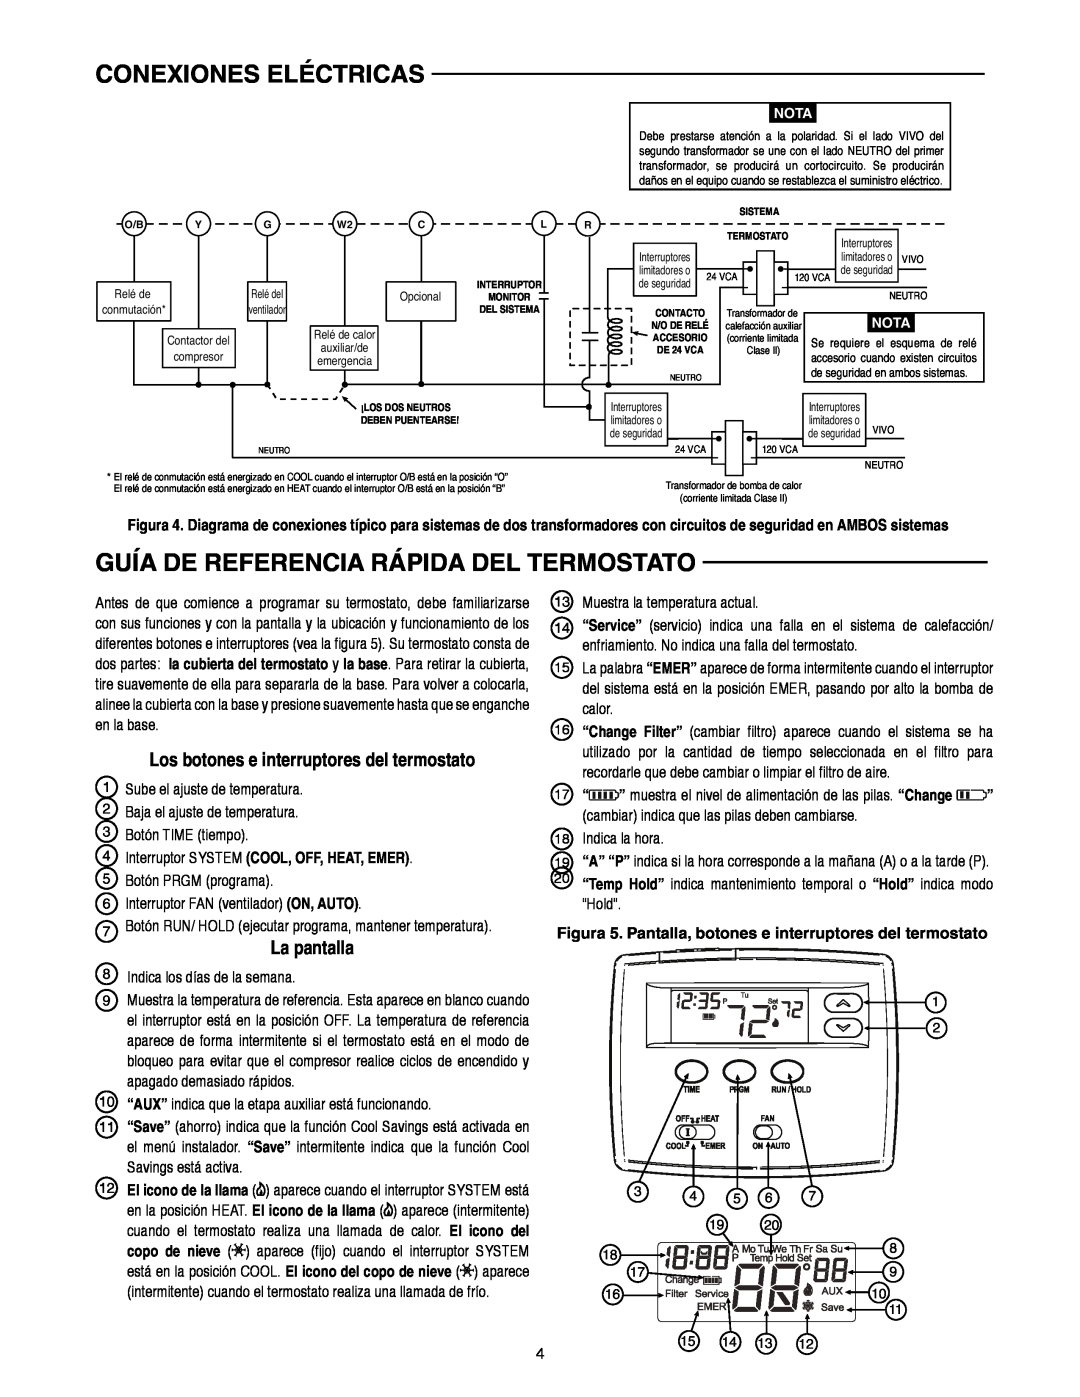 White Rodgers 1F82-0261 Guía De Referencia Rápida Del Termostato, La pantalla, Los botones e interruptores del termostato 